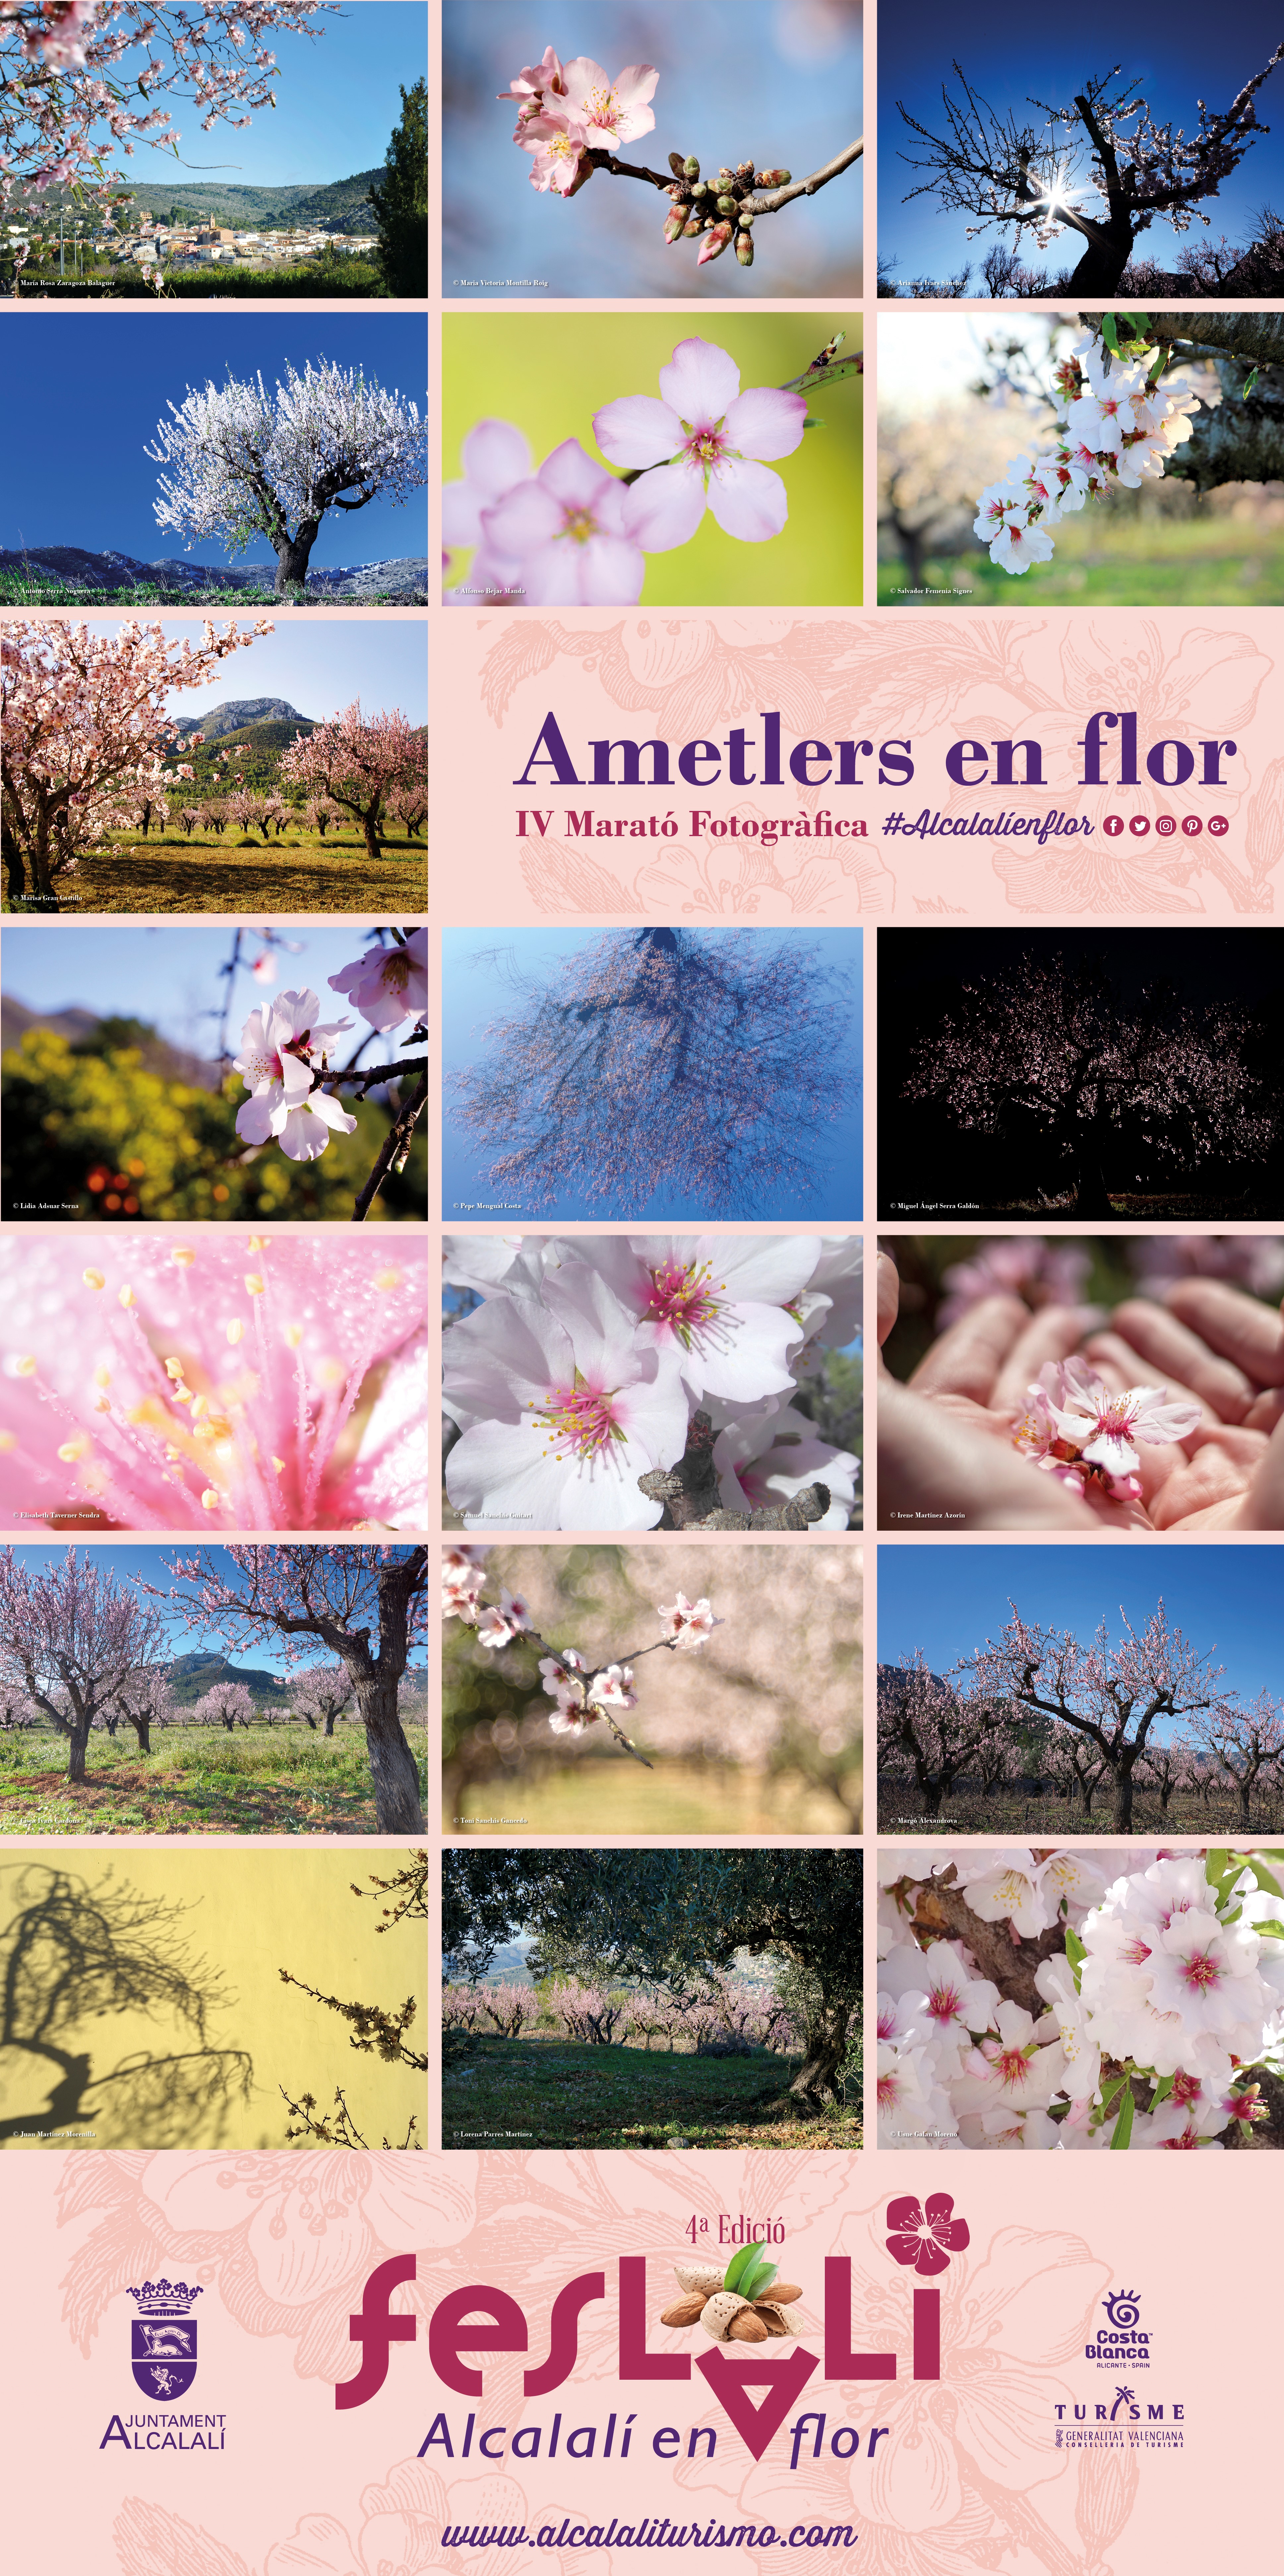 Maratón Fotográfica Alcalalí En Flor – Almendros en Flor